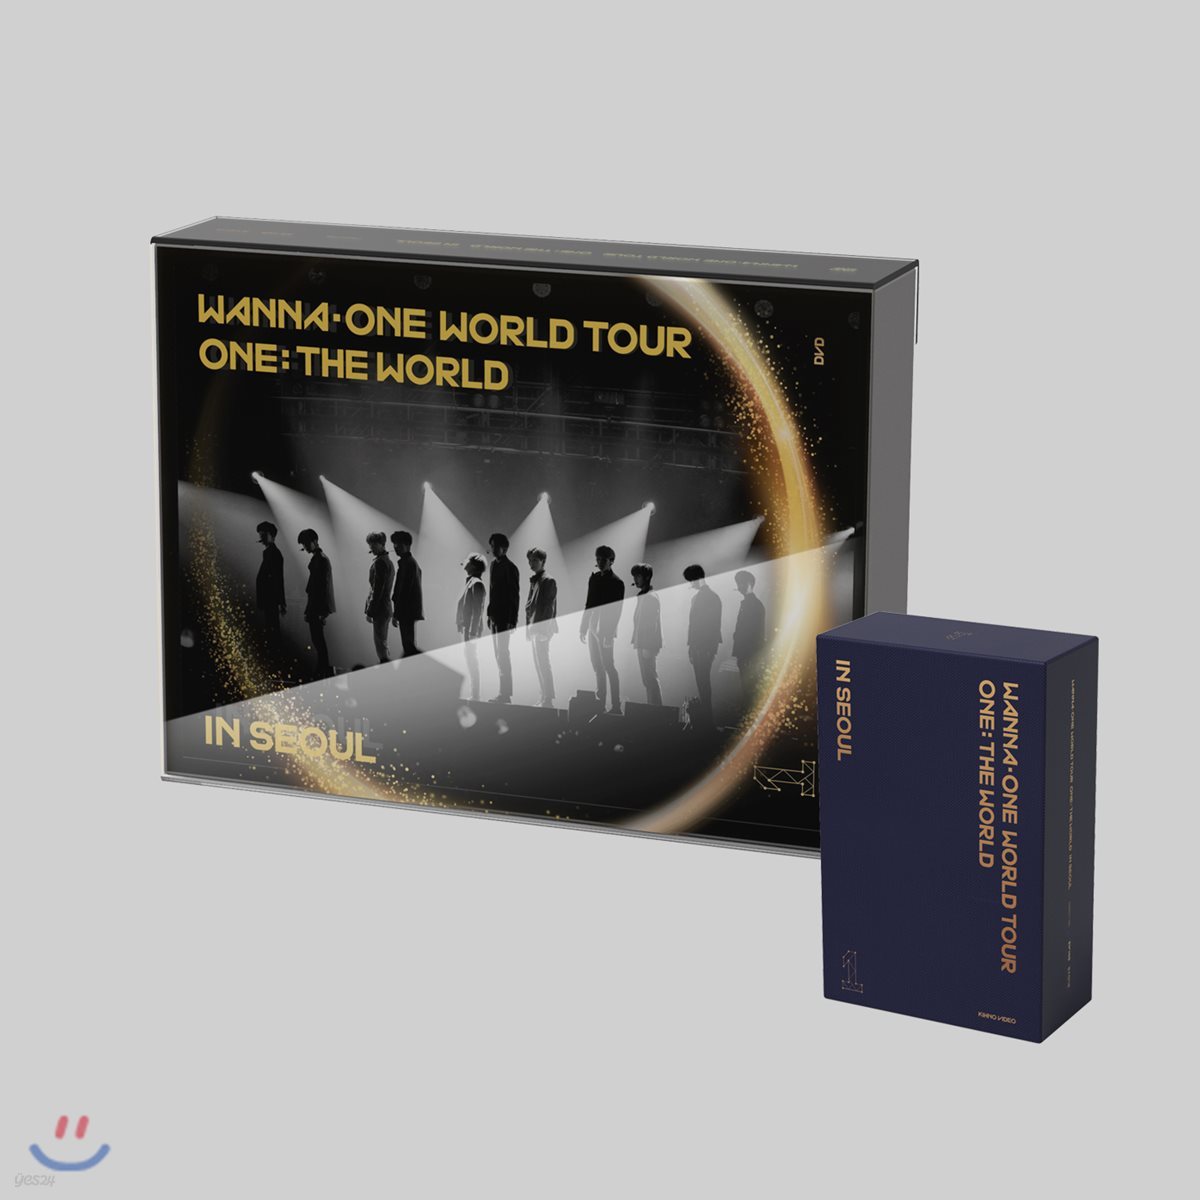 워너원 (Wanna One) - 워너원 월드투어 원: 더 월드 인 서울 Wanna One World Tour One: The World In Seoul [DVD+KIHNO VIDEO]